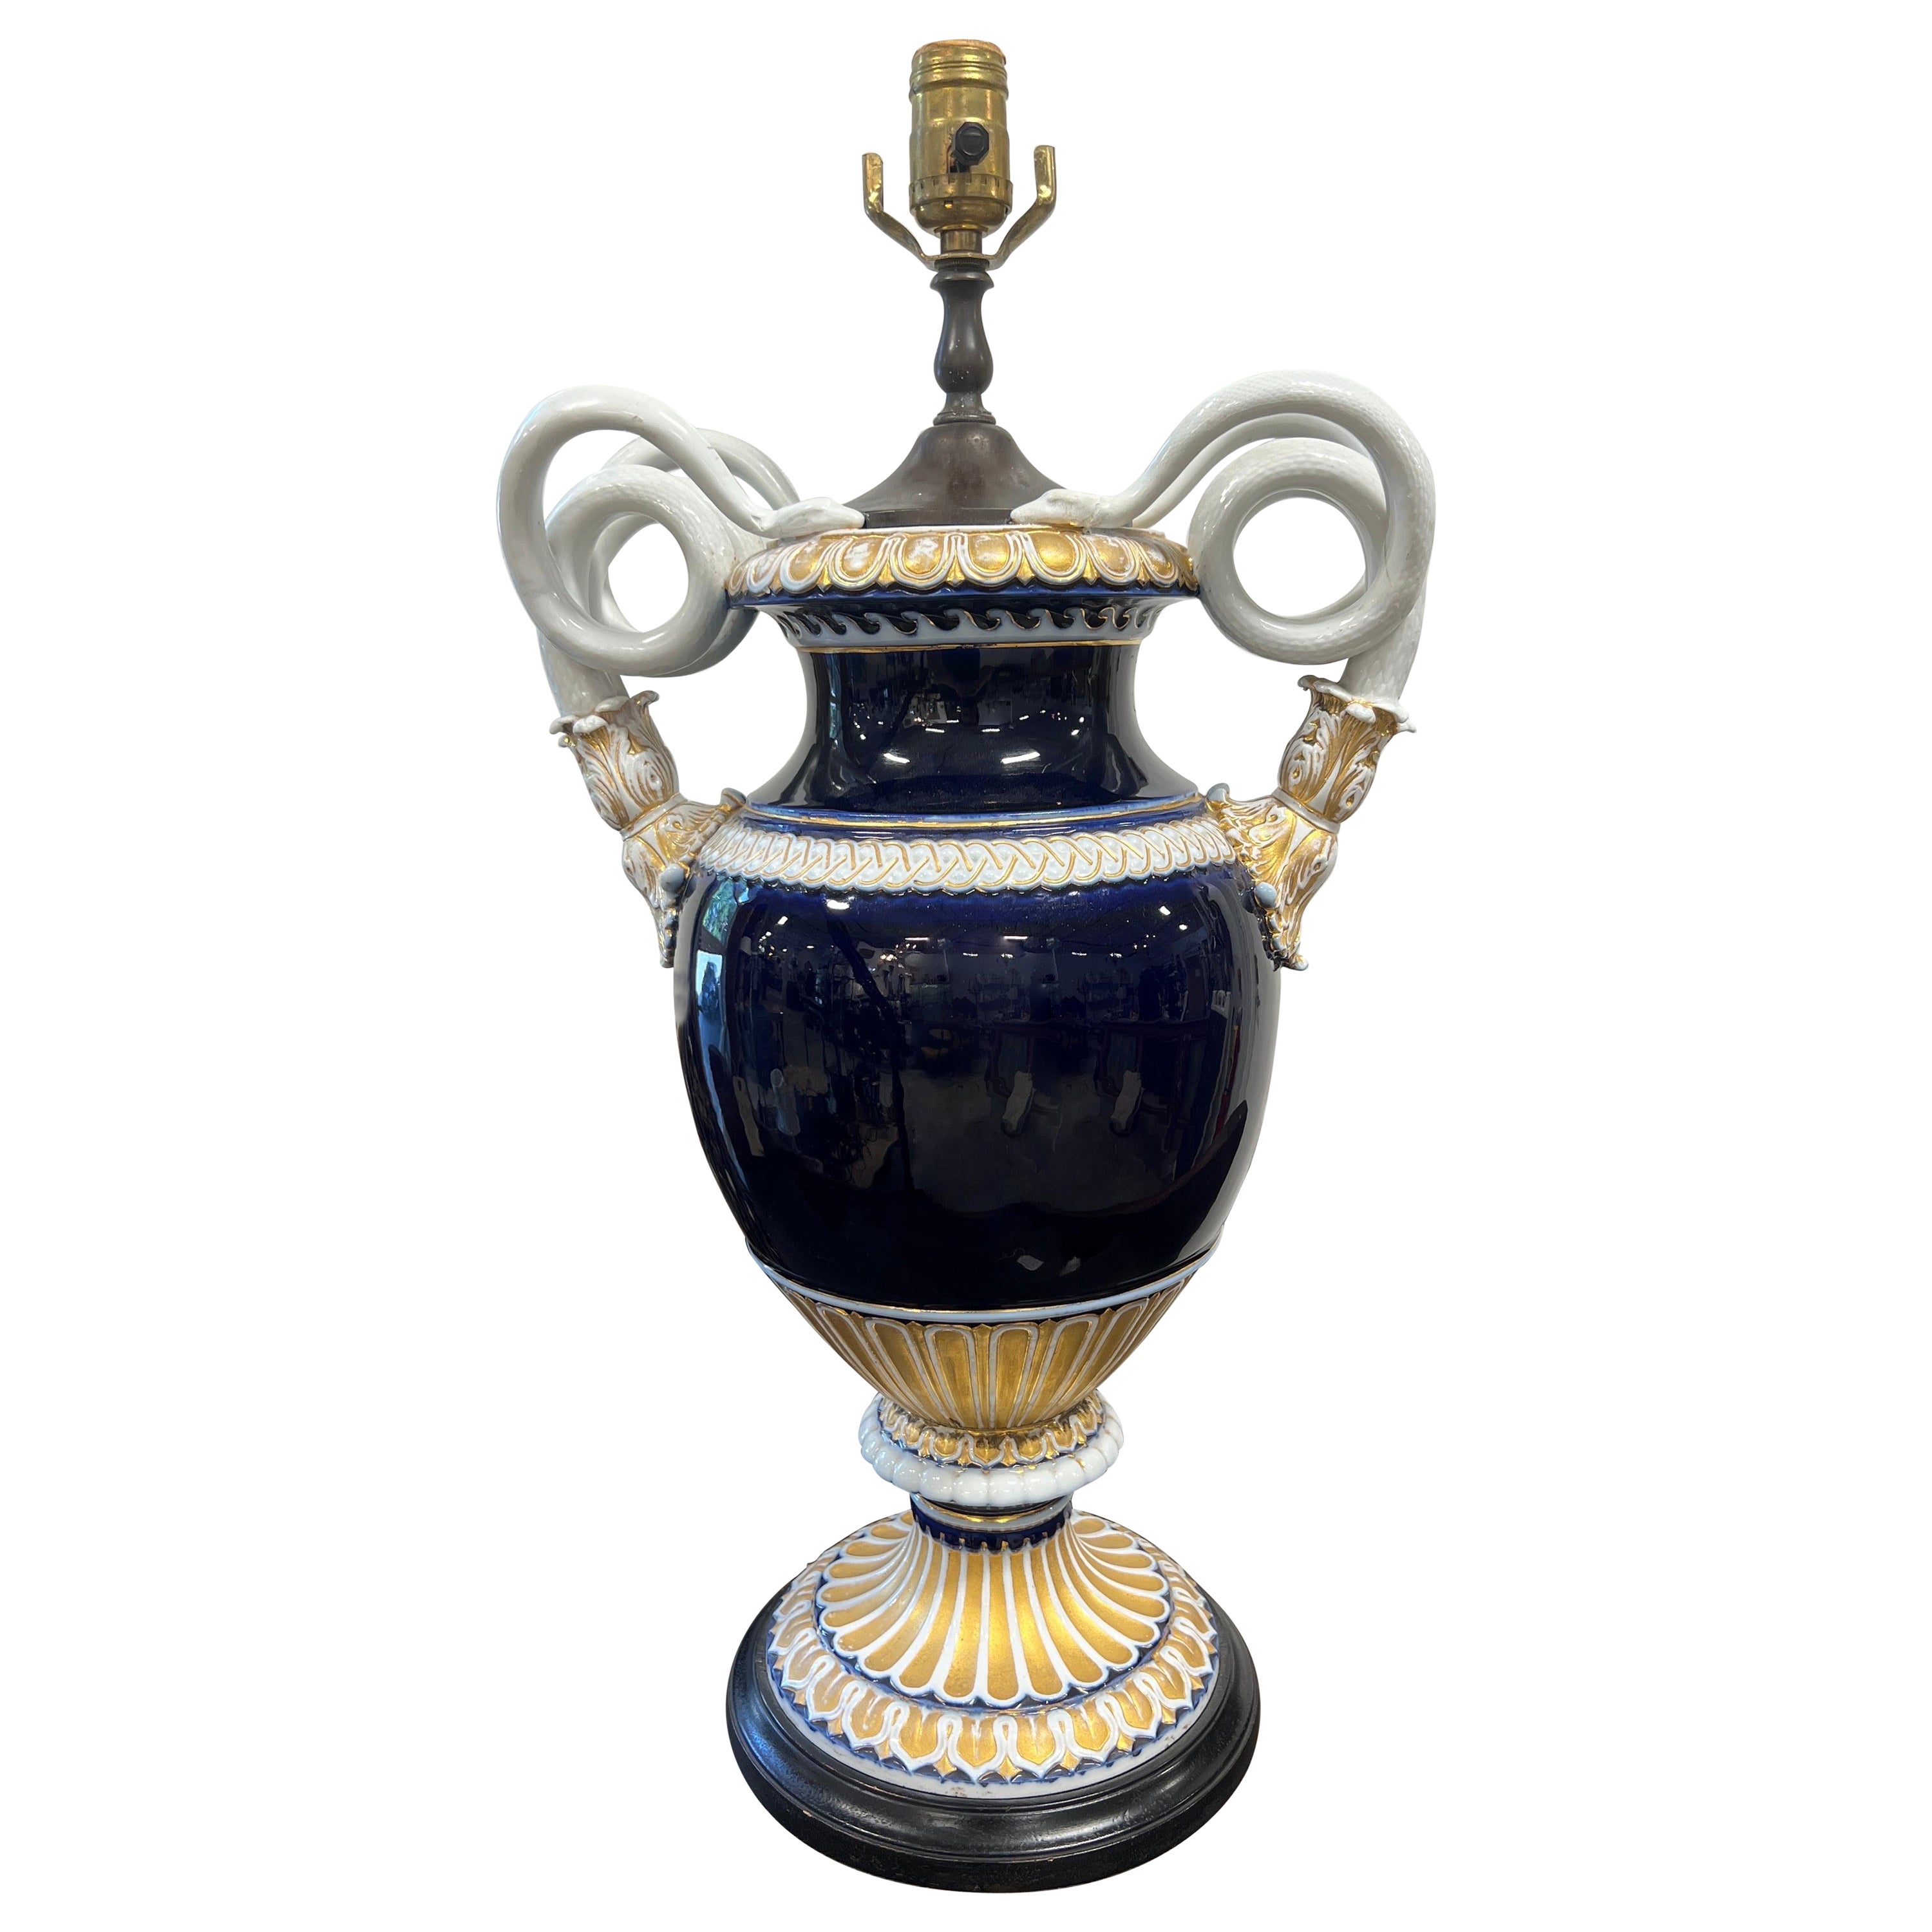 Lampe urne néoclassique de Meissen du 19e siècle, bleu cobalt et or avec poignée de serpent